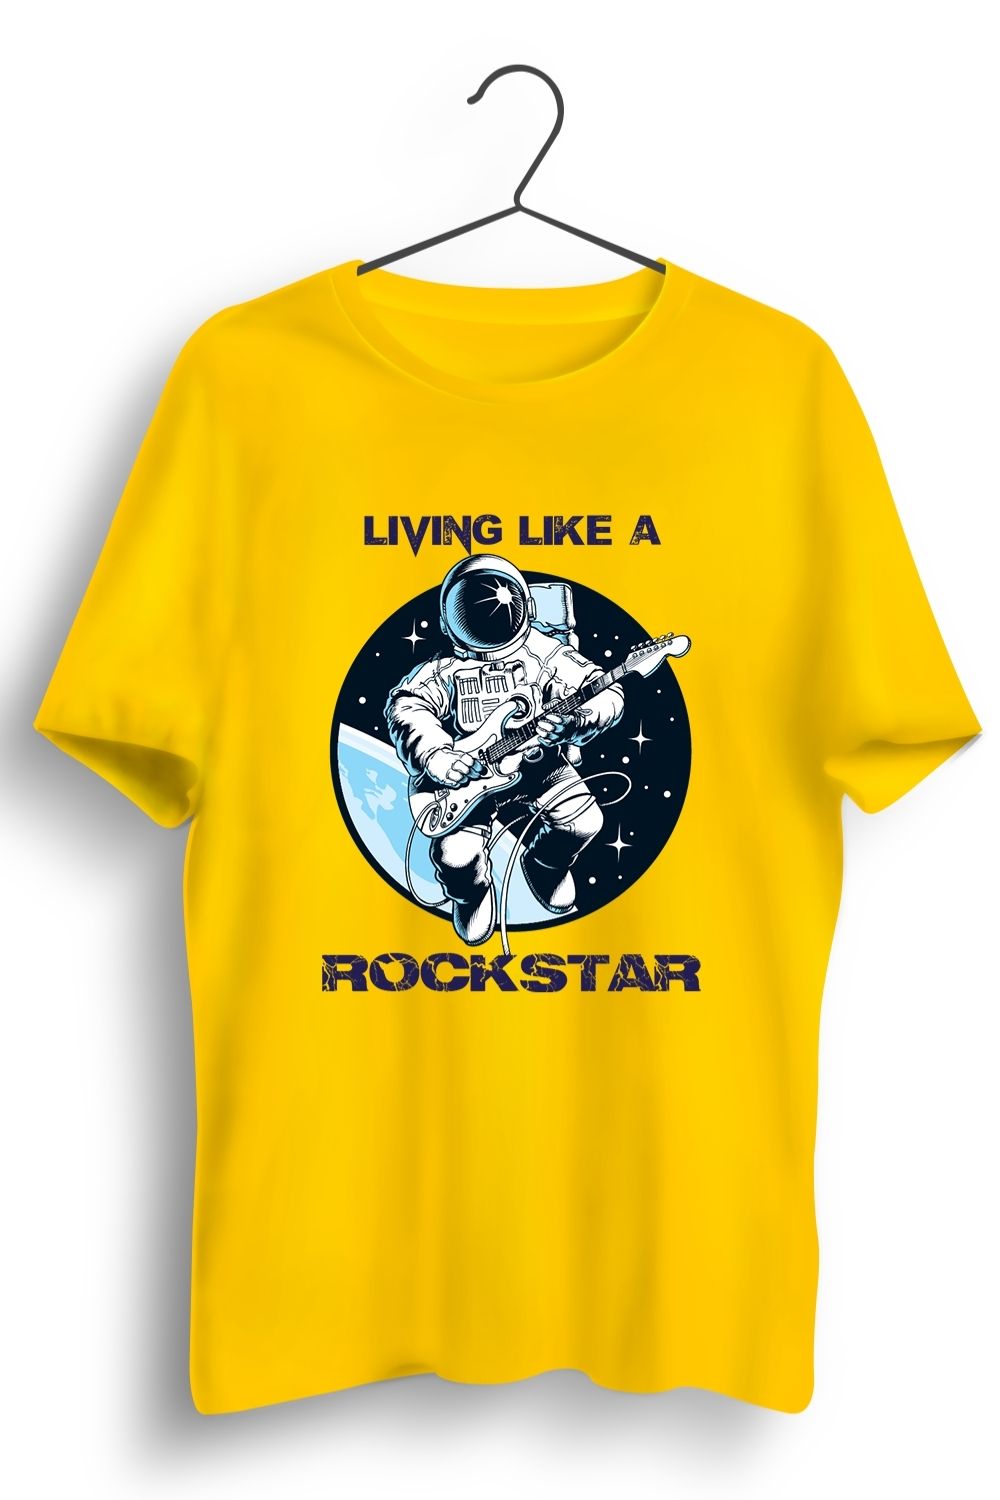 Living Like a Rockstar Graphic Printed Yellow Tshirt